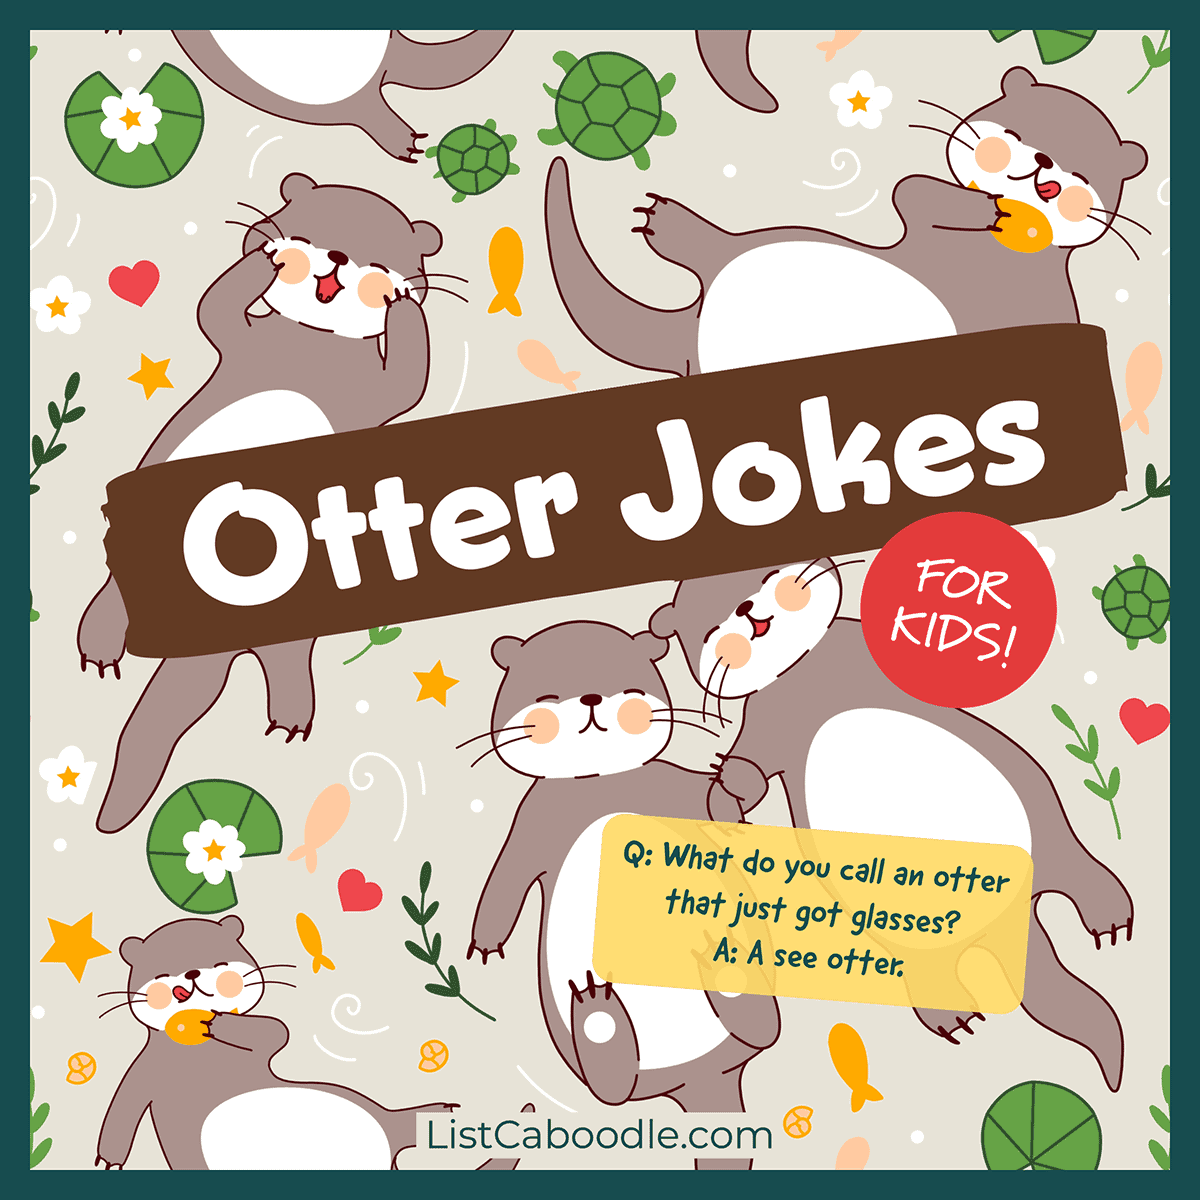 otter jokes for kids